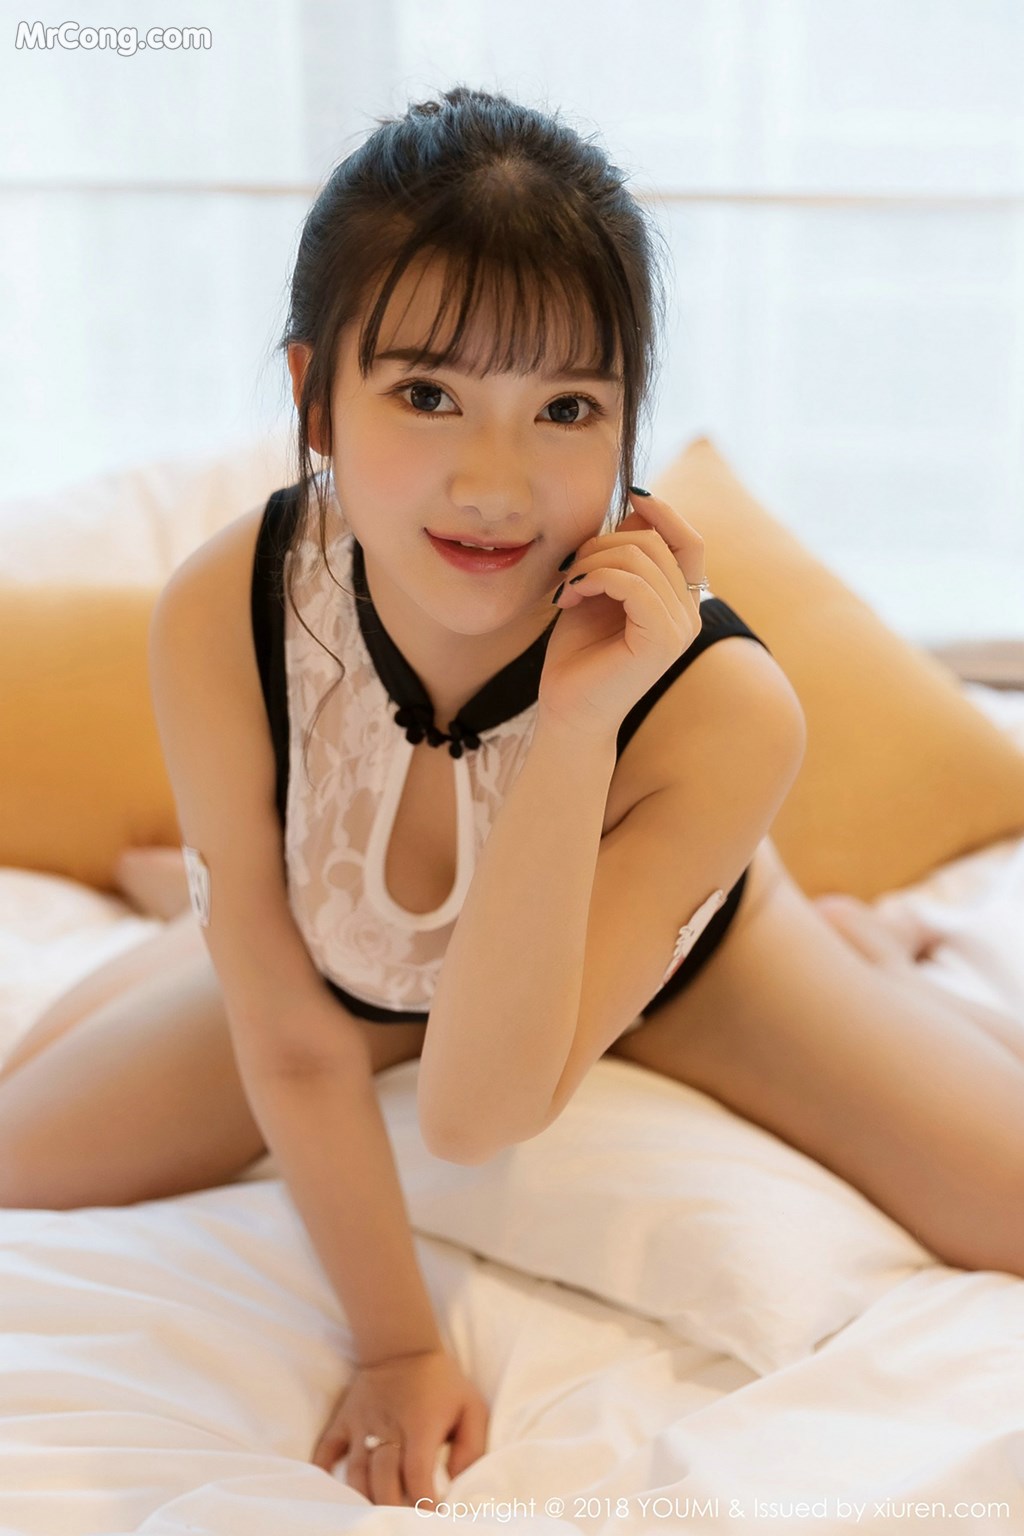 YouMi Vol. 250: Model Xiao You Nai (小 尤奈) (52 photos) photo 1-8